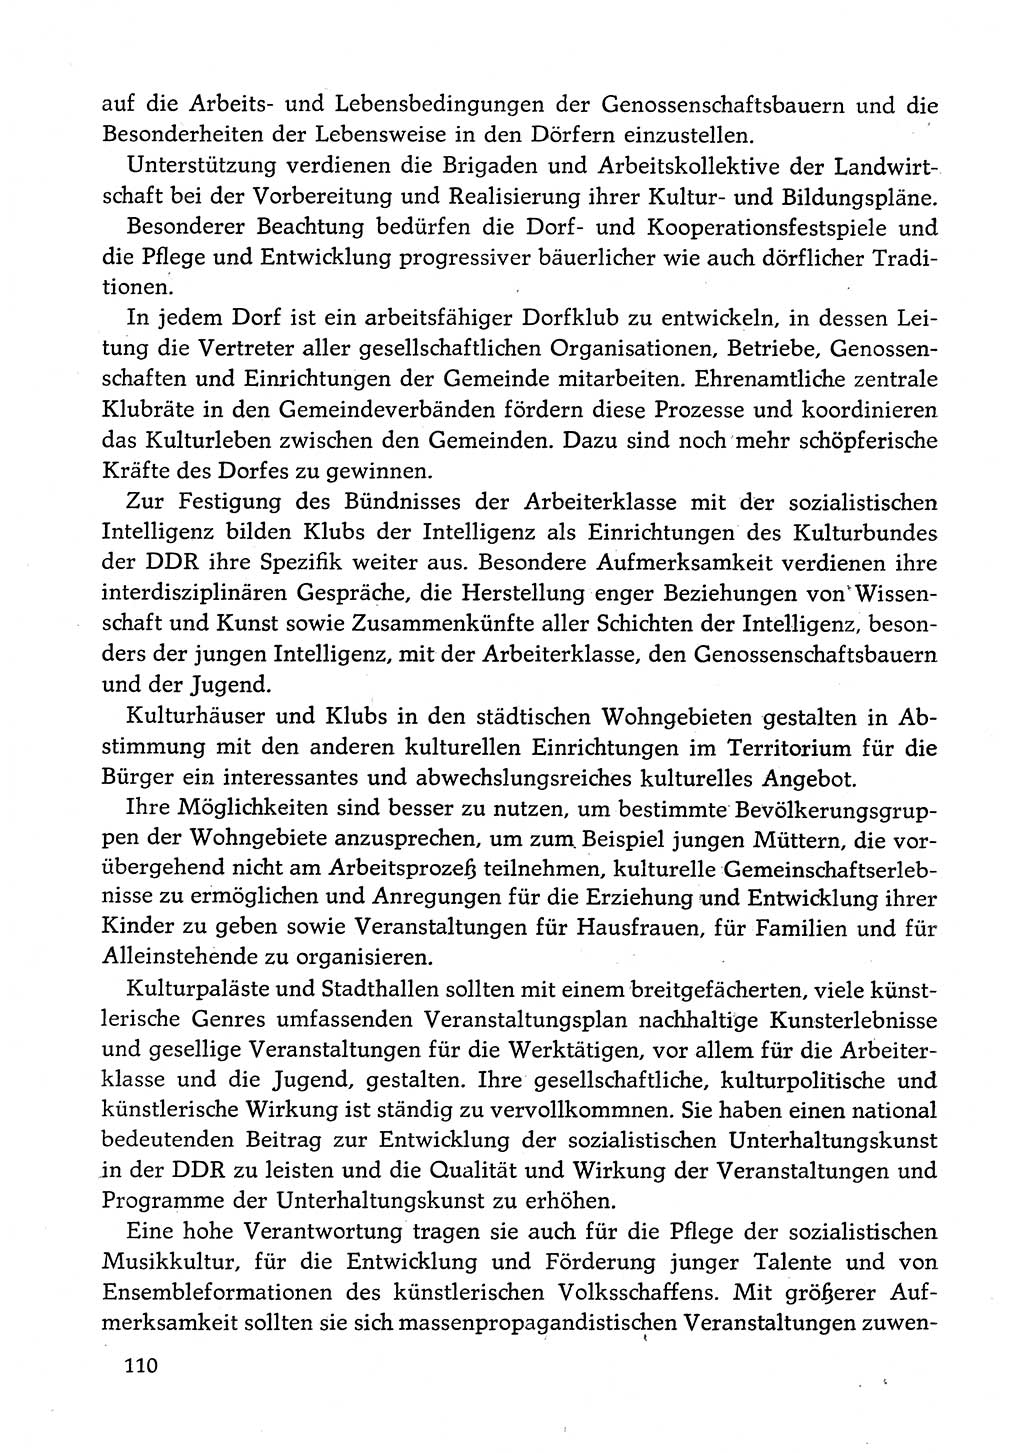 Dokumente der Sozialistischen Einheitspartei Deutschlands (SED) [Deutsche Demokratische Republik (DDR)] 1982-1983, Seite 110 (Dok. SED DDR 1982-1983, S. 110)